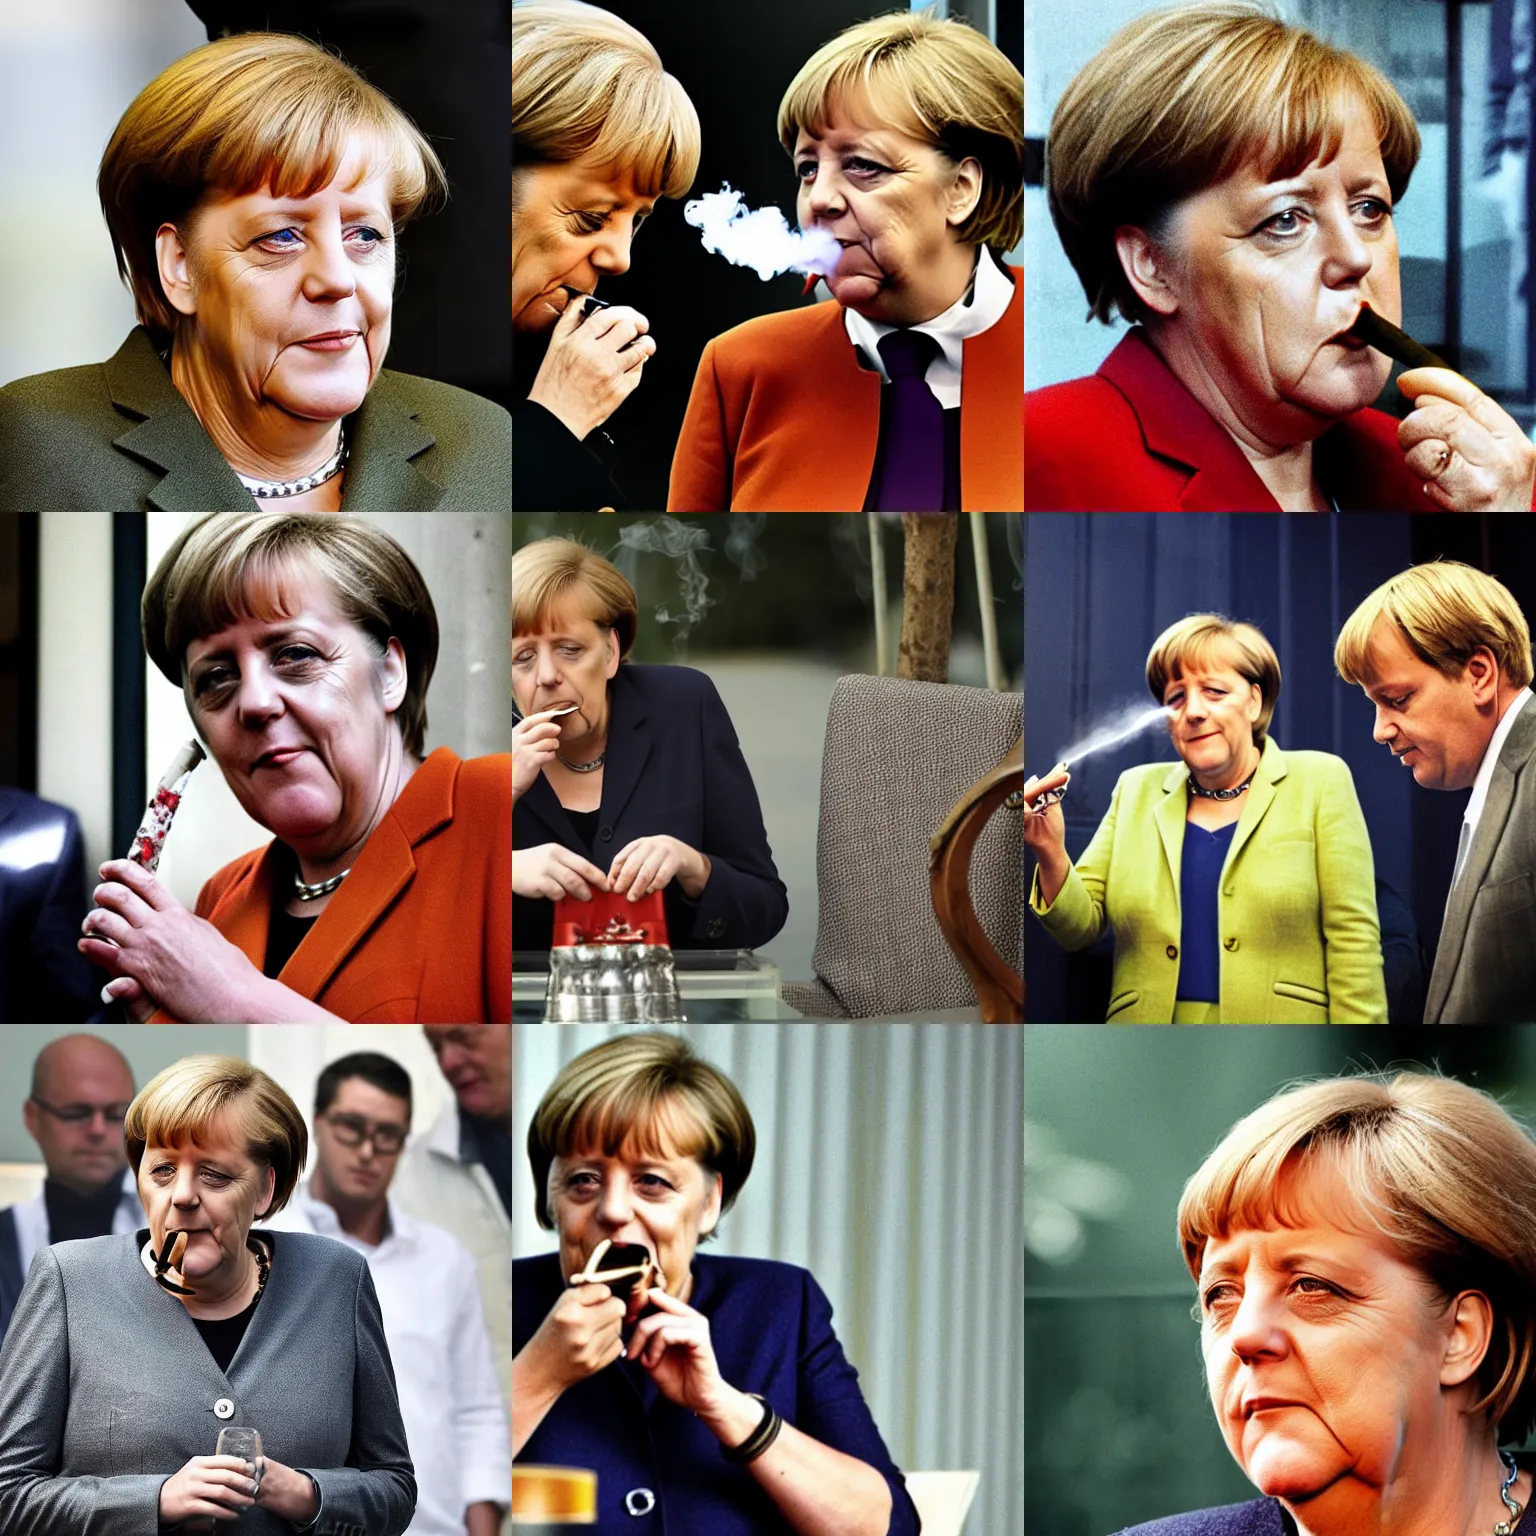 Prompt: Merkel smoking on a bong